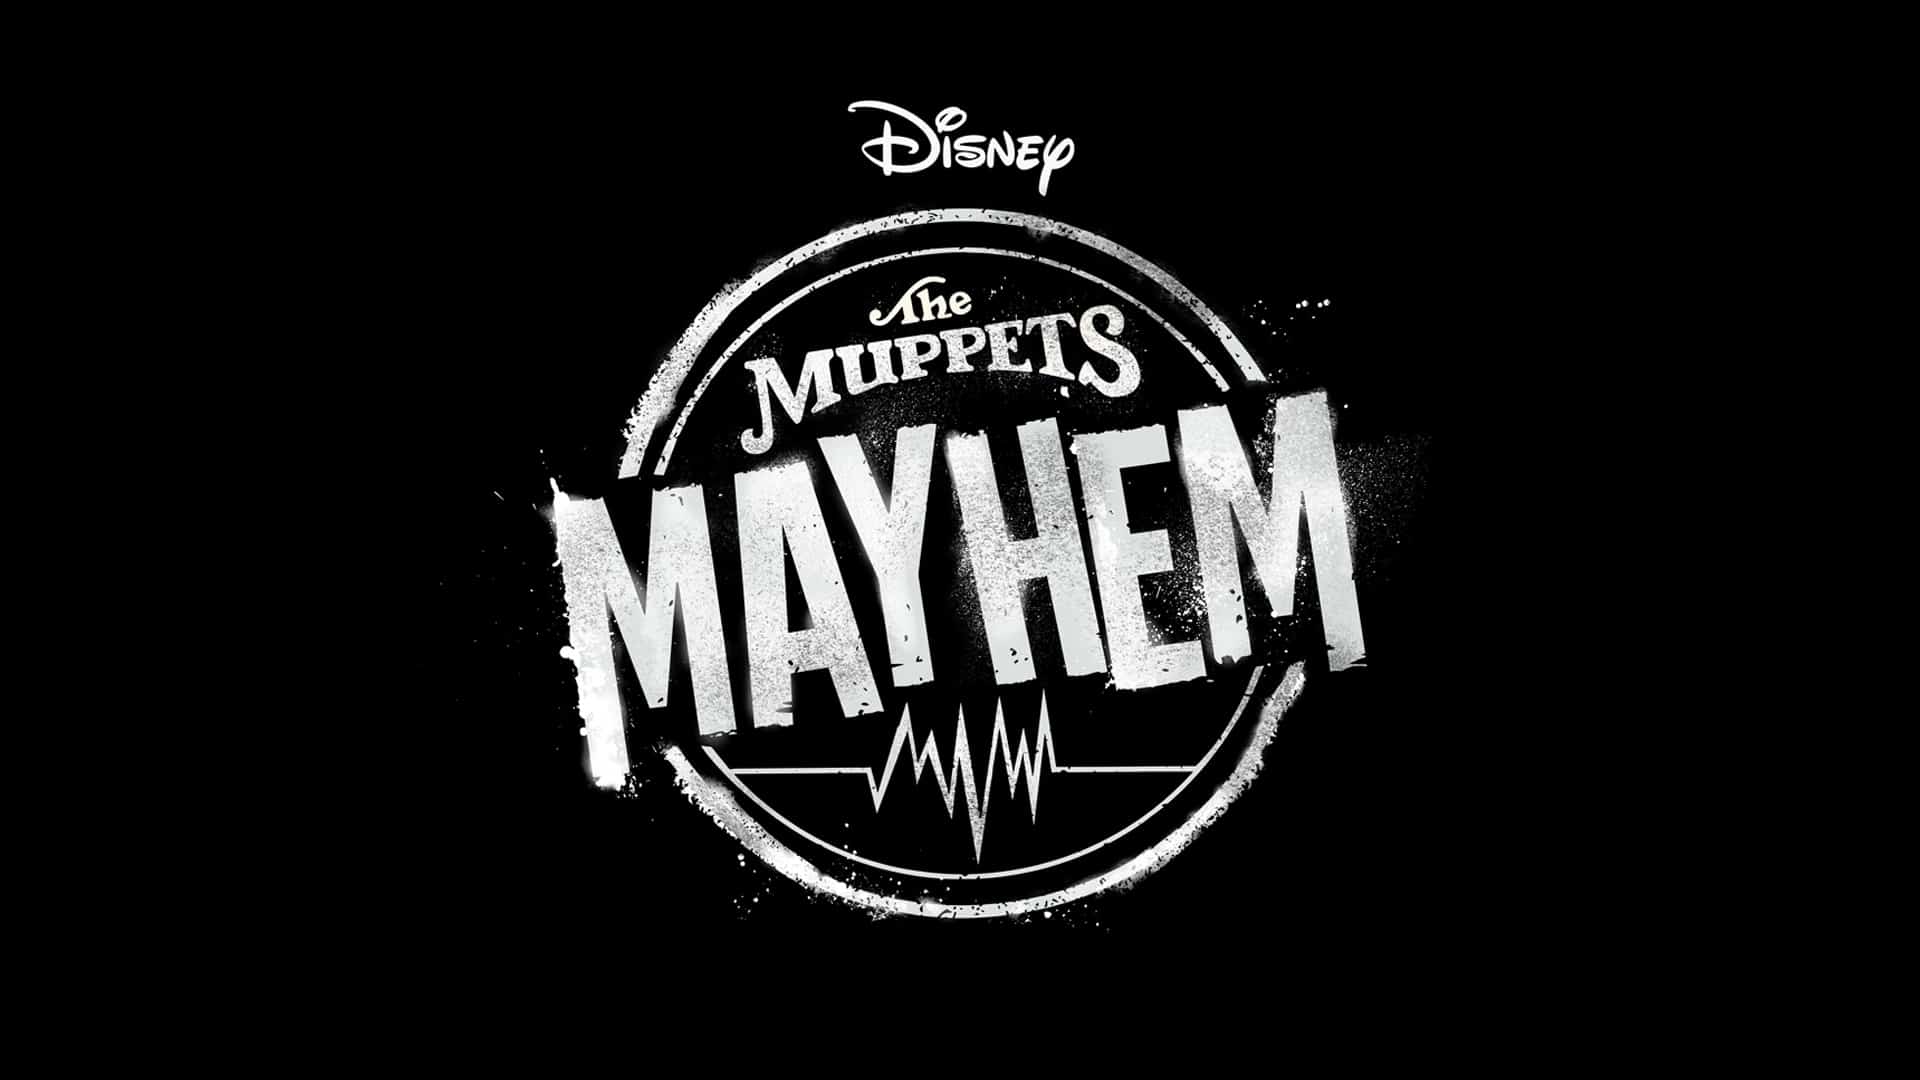 Muppets Mayhem” Disney+ Show